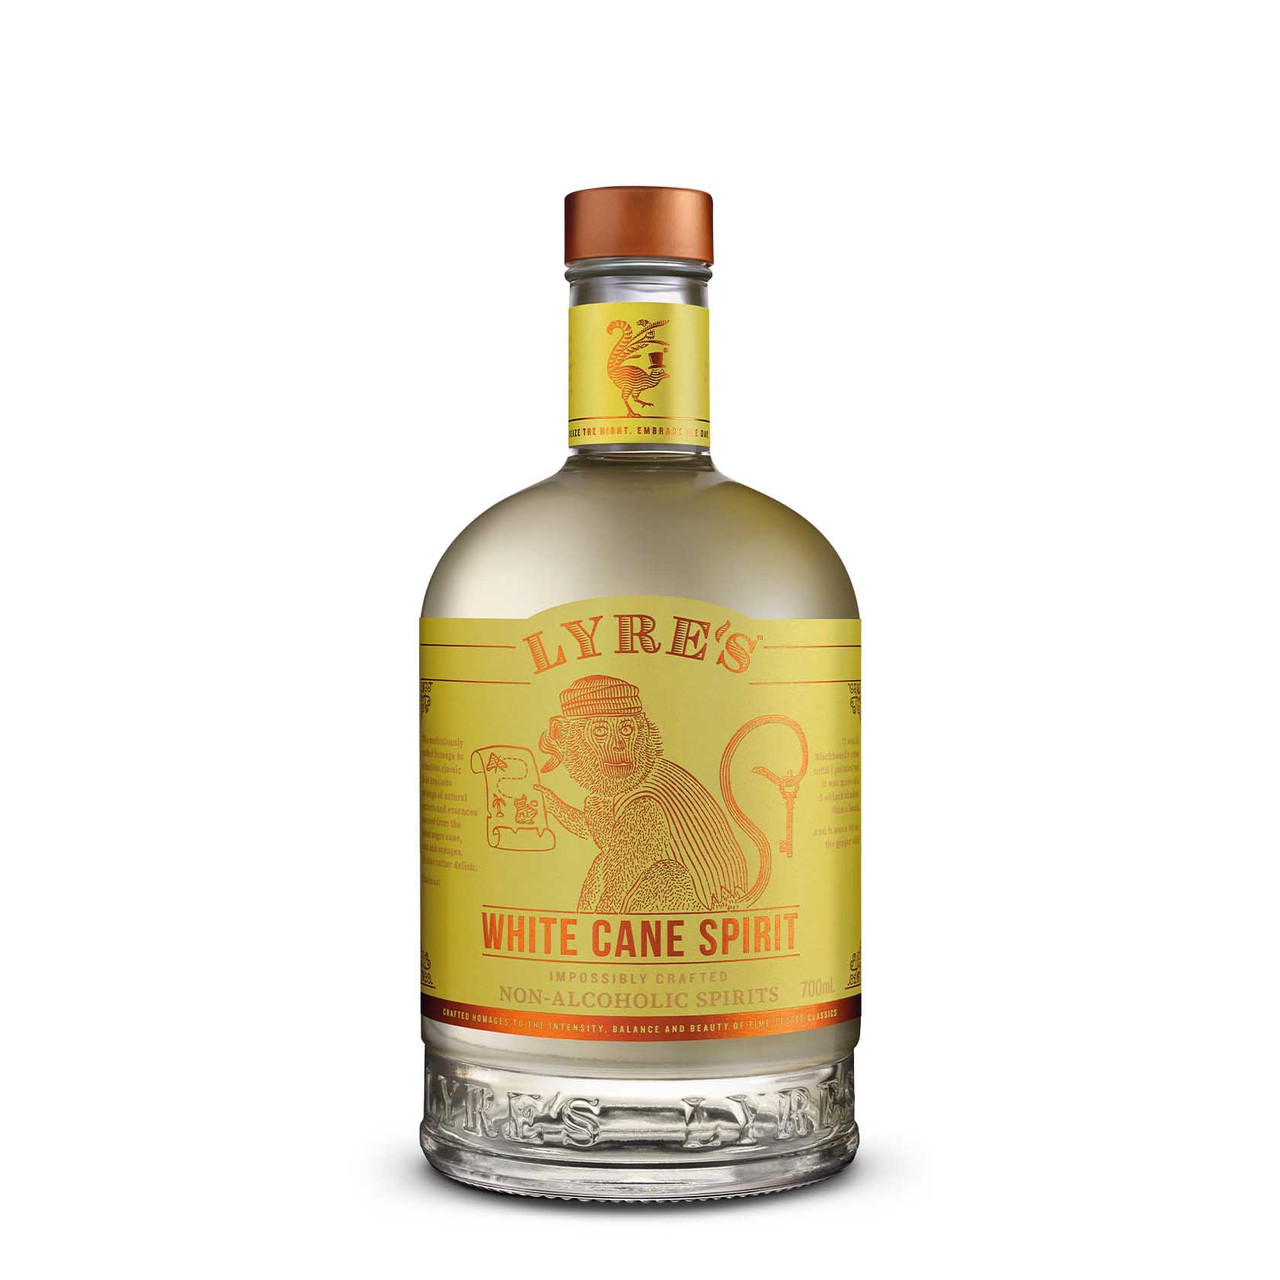 Non-Alcoholic White Rum, White Cane Spirit